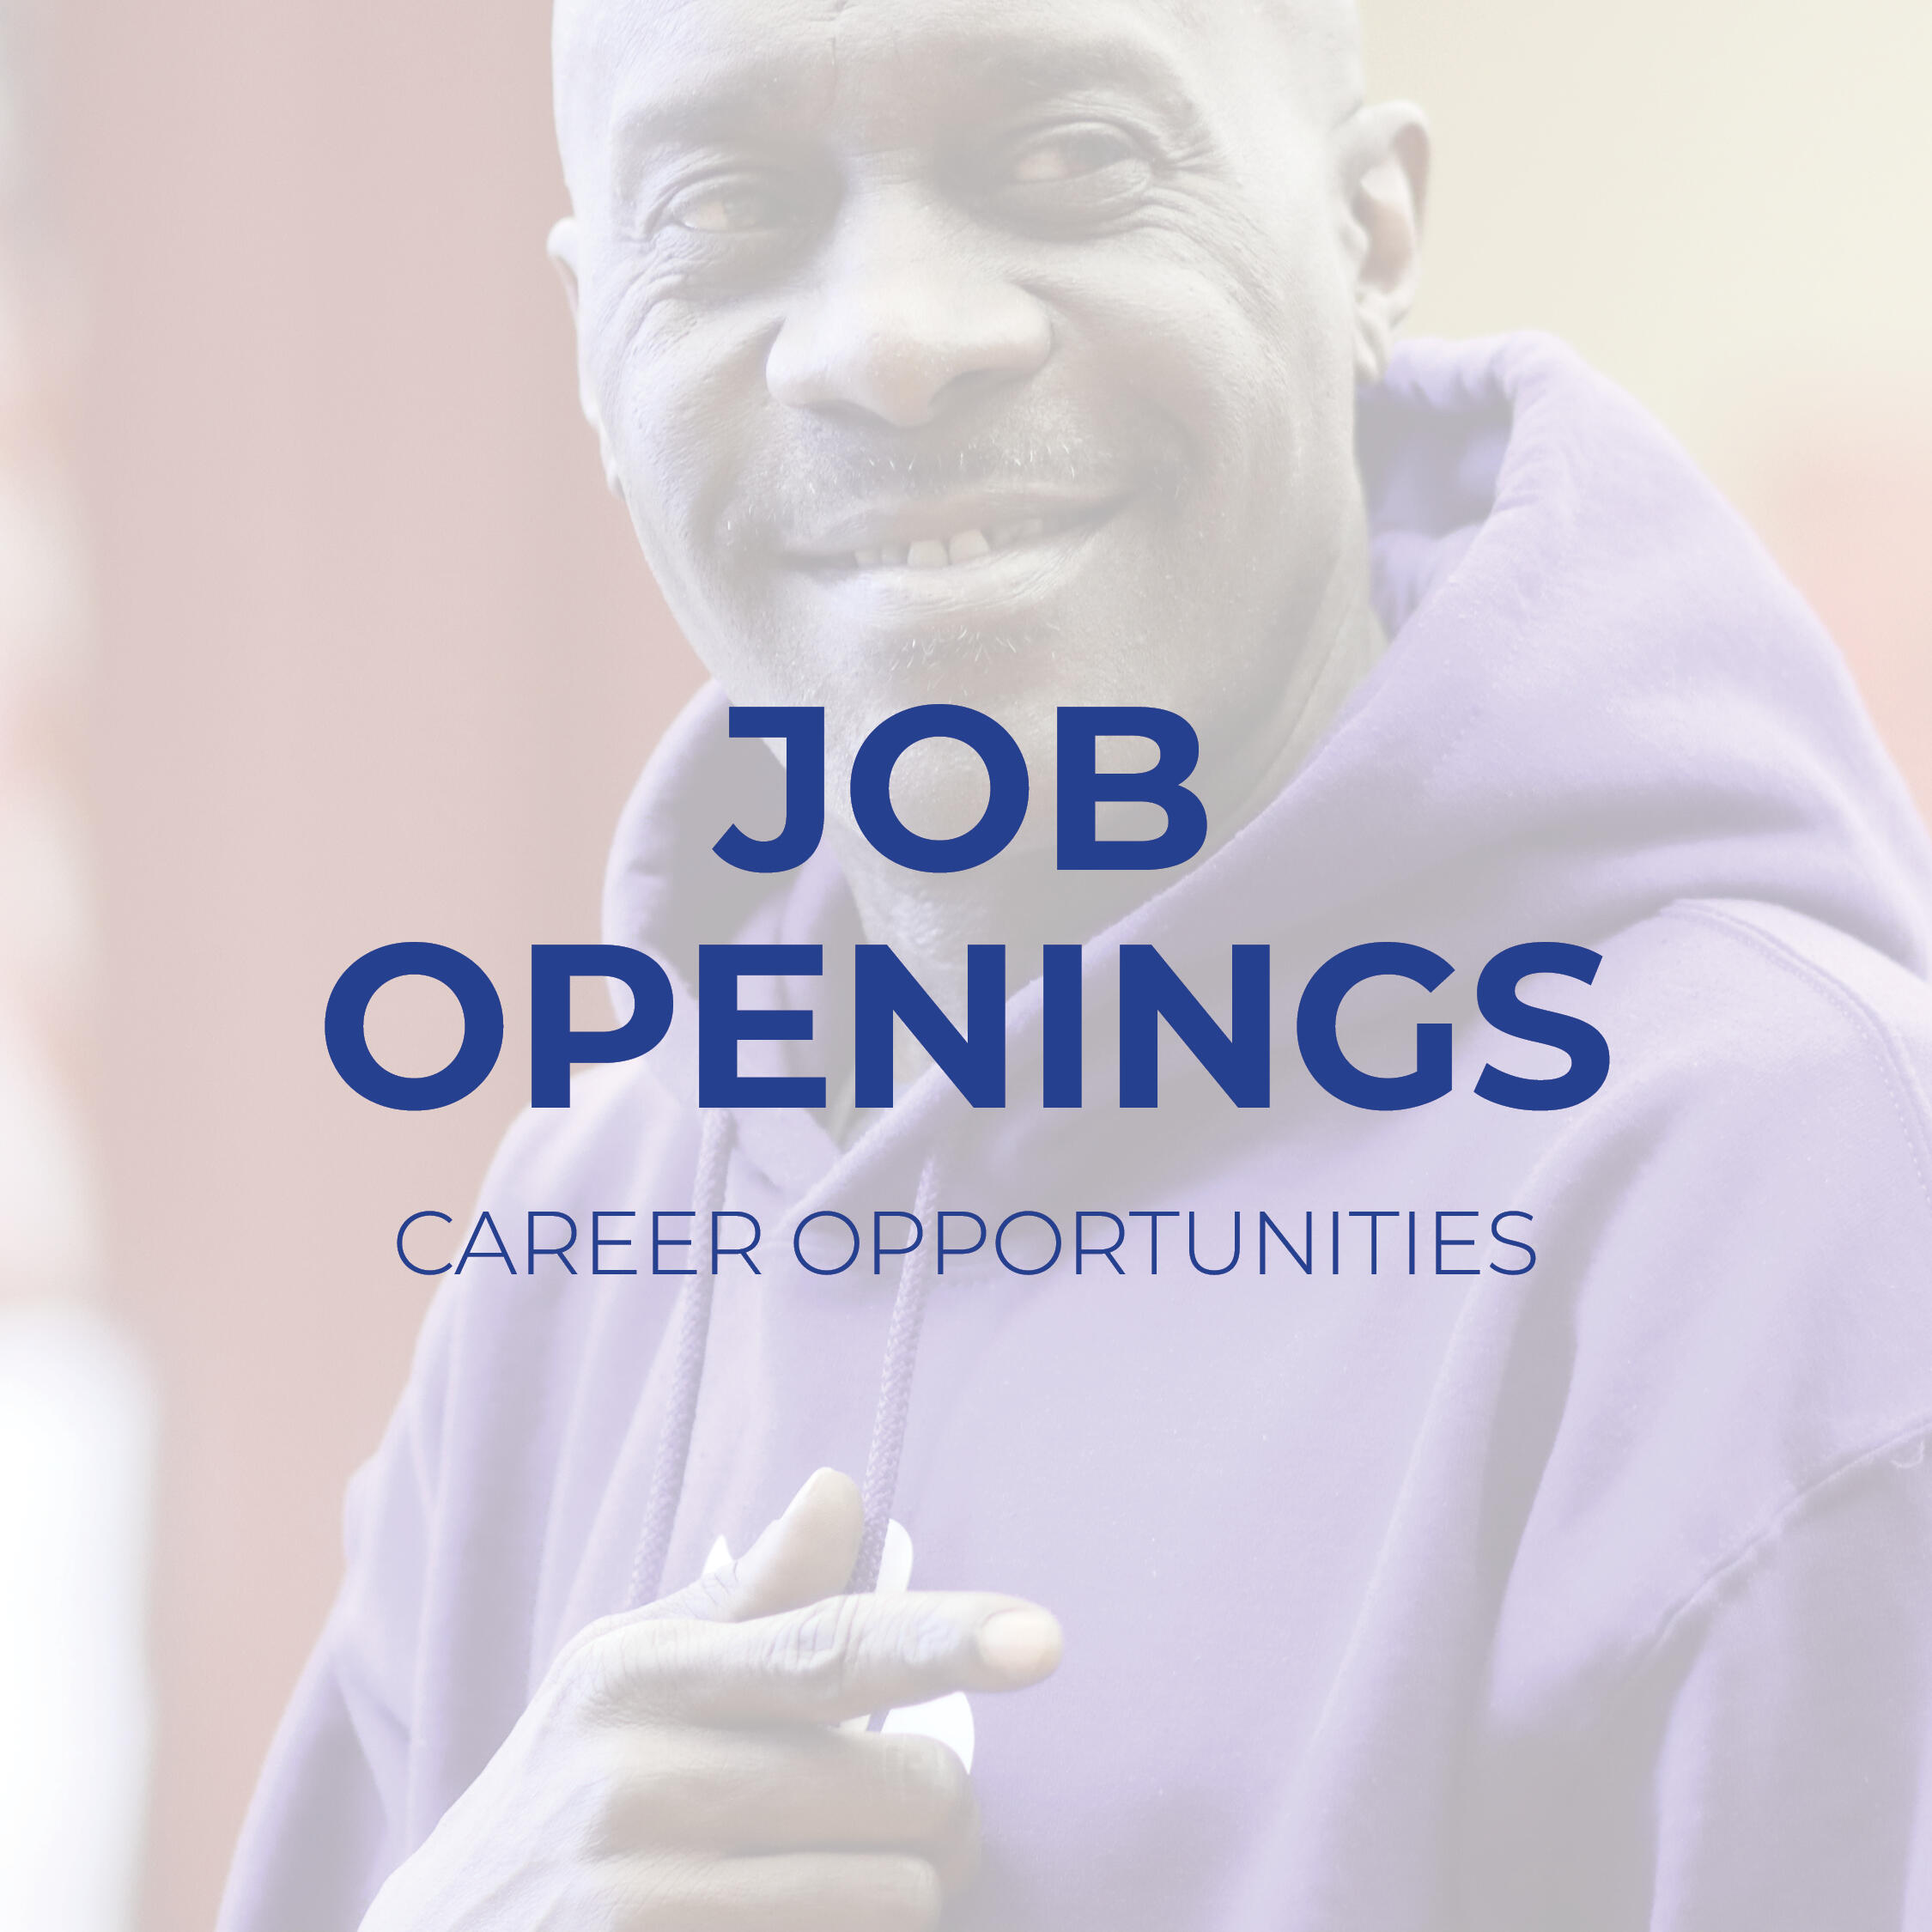 Job Openings / Career Opportunities